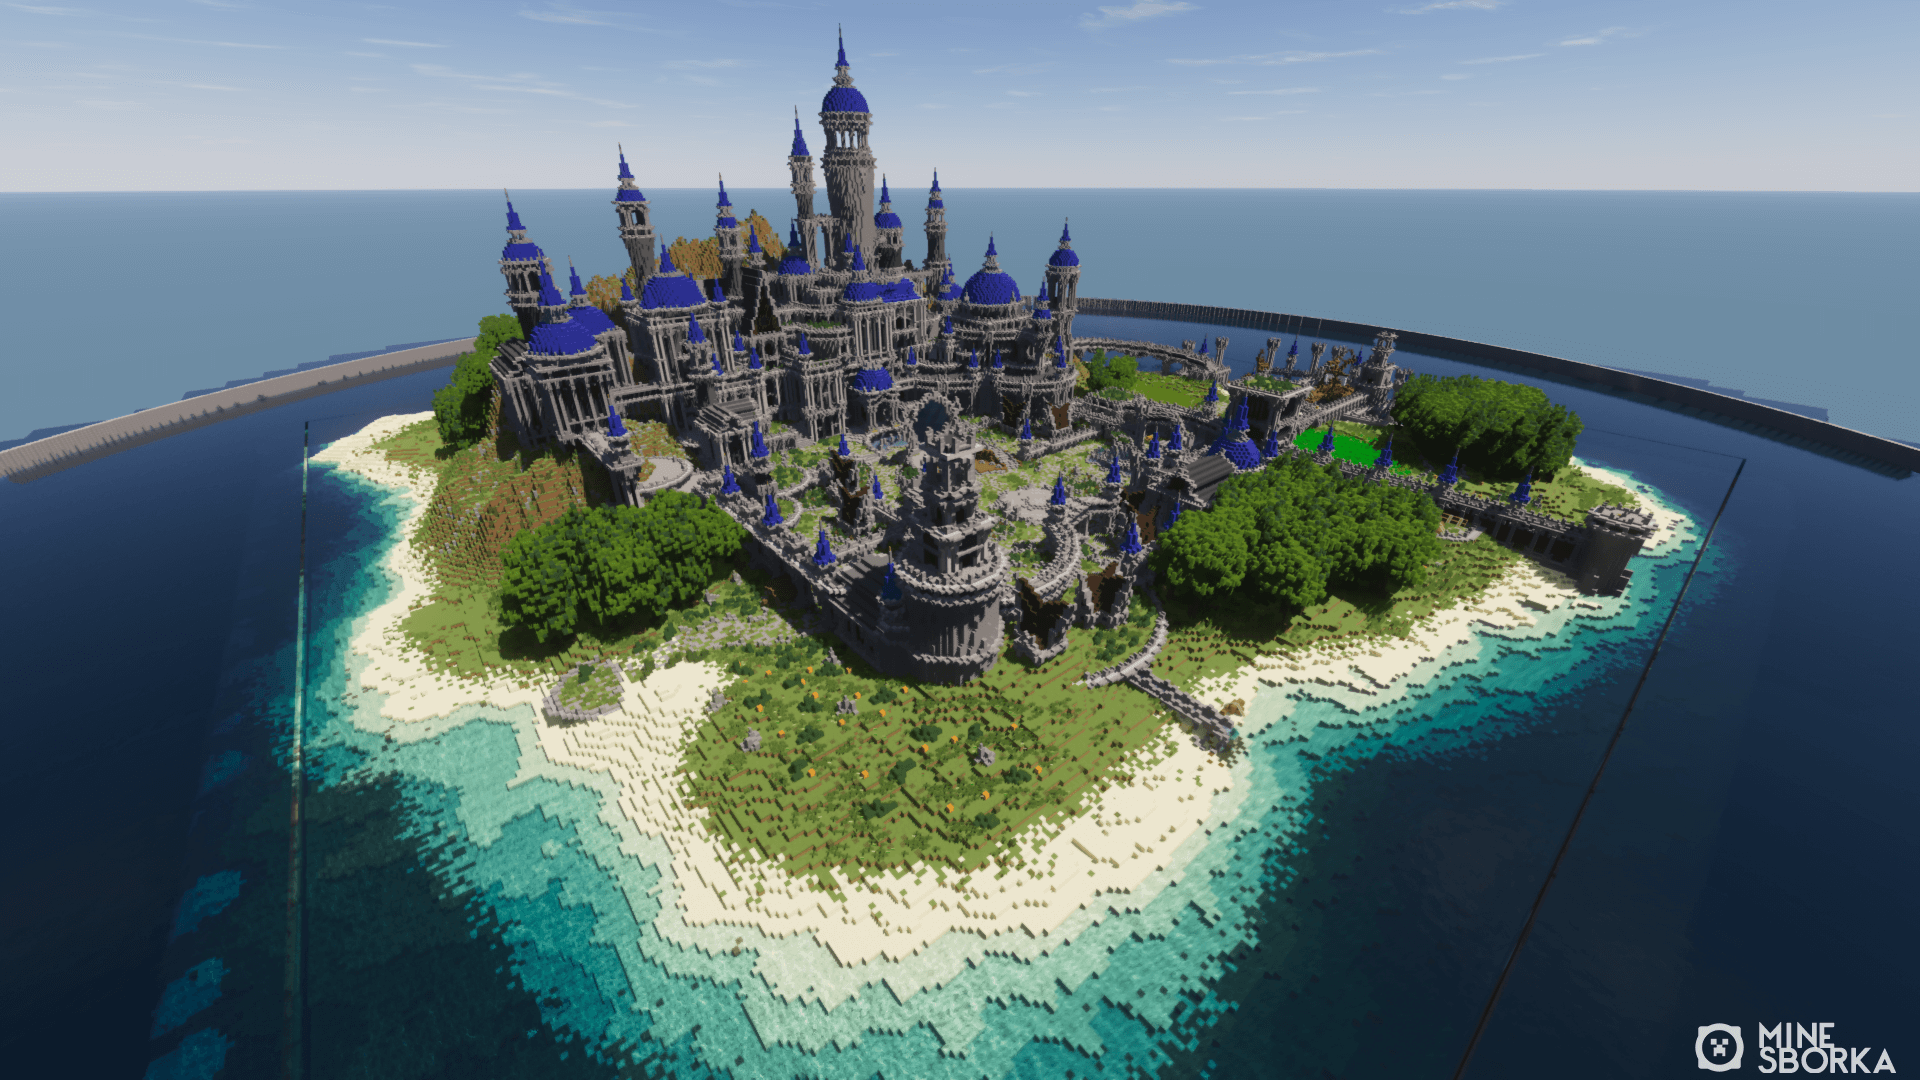 MarineLobby - Скачать морское лобби для сервера Minecraft в виде острова с замком